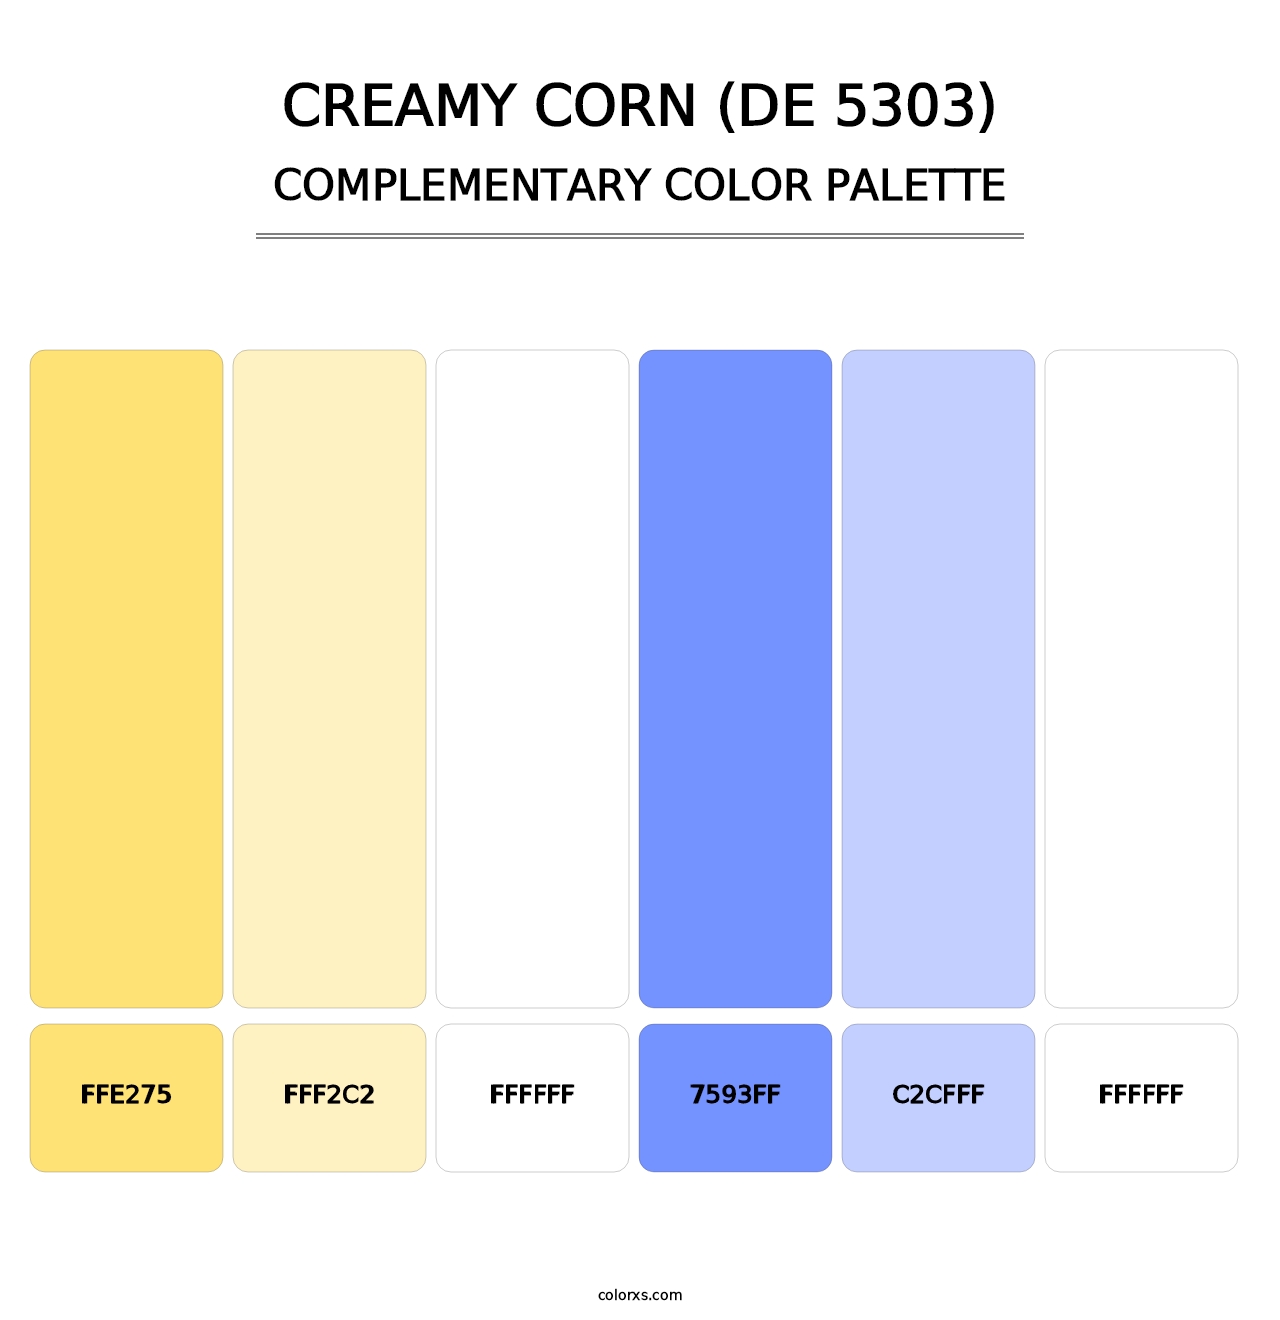 Creamy Corn (DE 5303) - Complementary Color Palette